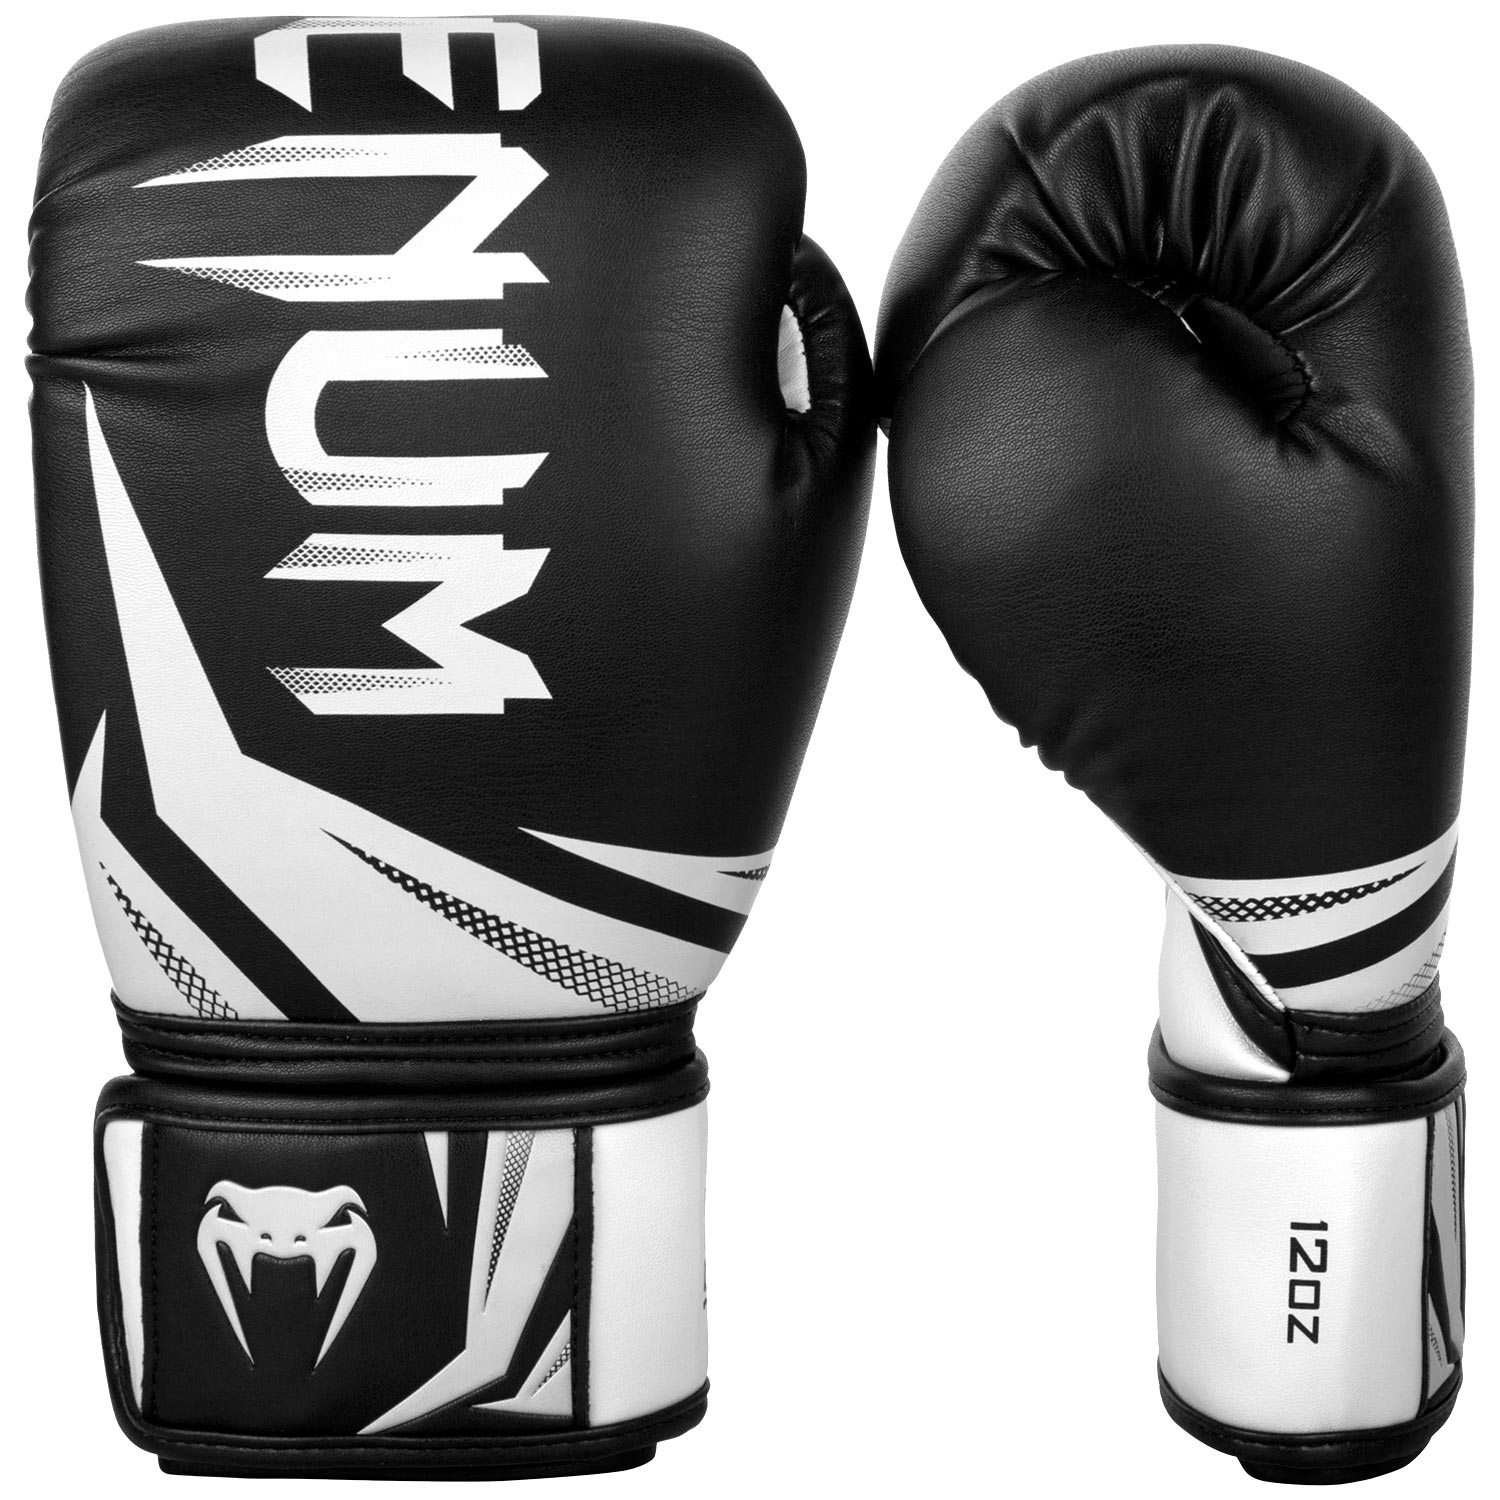 Boxerské rukavice Challenger 3.0 černé/bílé VENUM vel. 12 oz